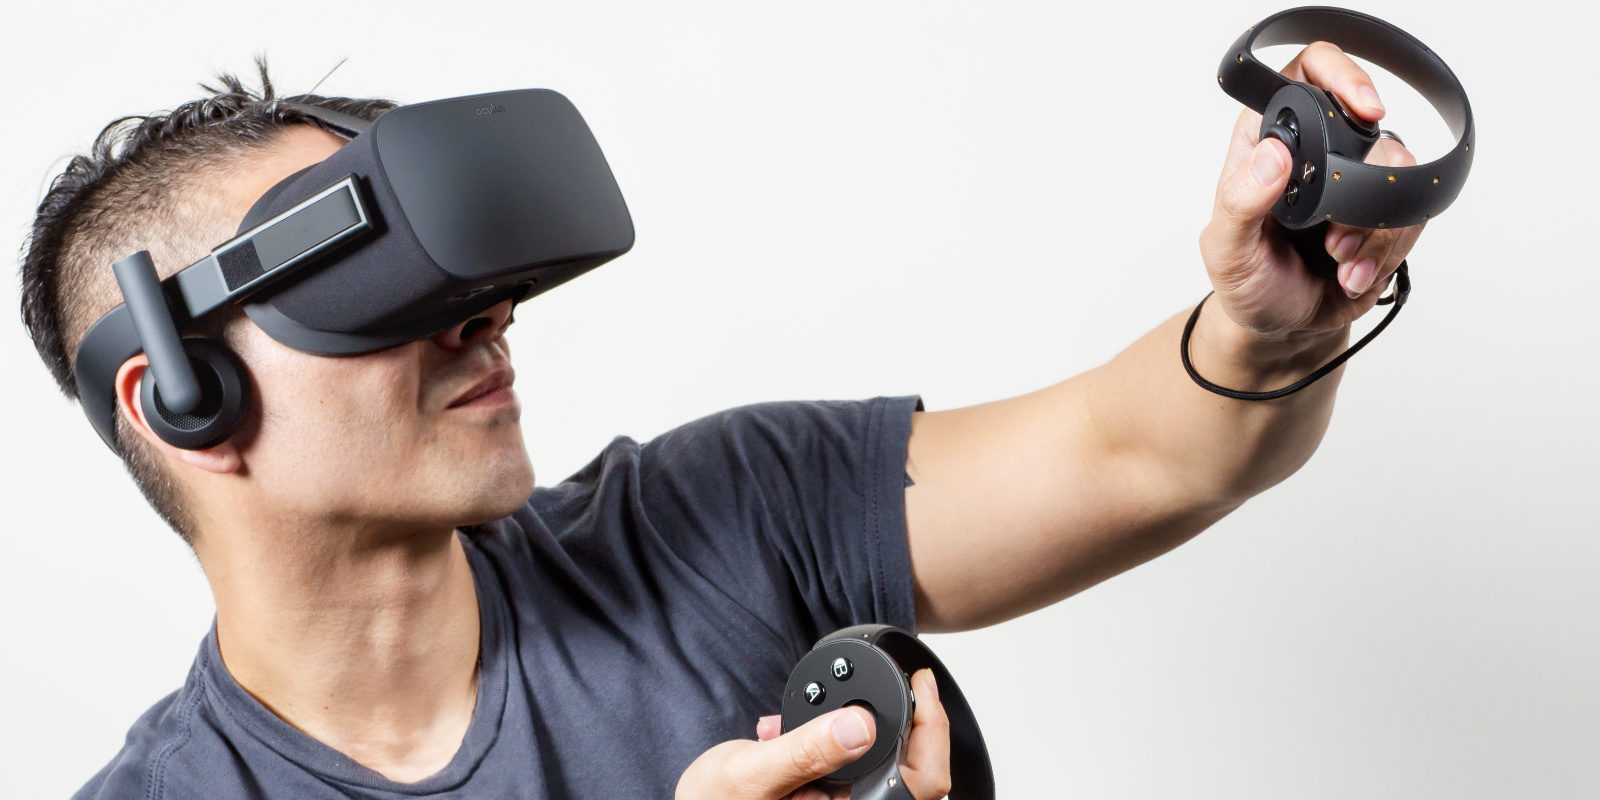 El pack de Oculus Rift y Touch vuelve a bajar de precio